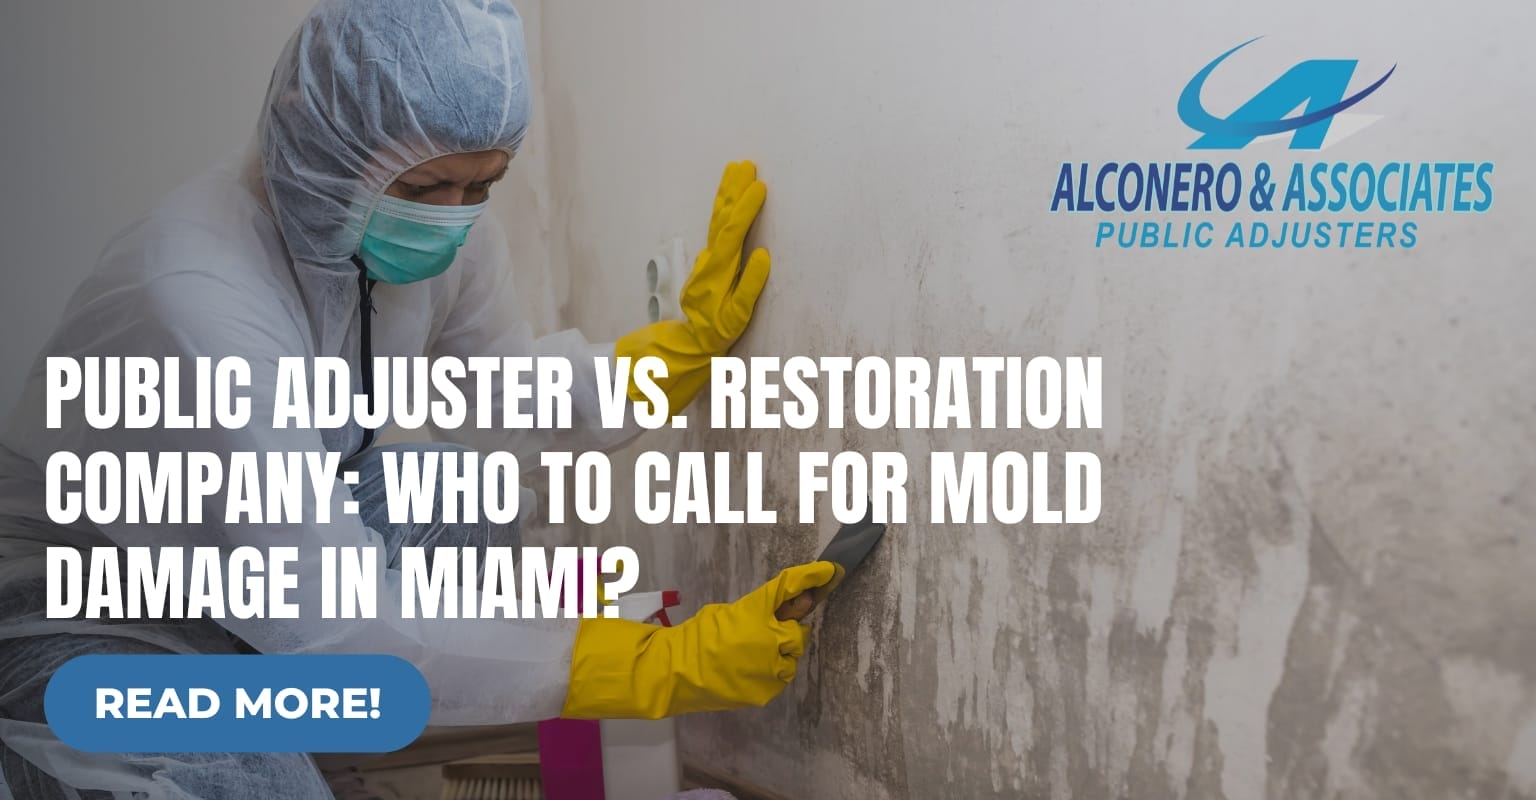 Public Adjuster vs. Restoration Company for Mold Damage in Miami